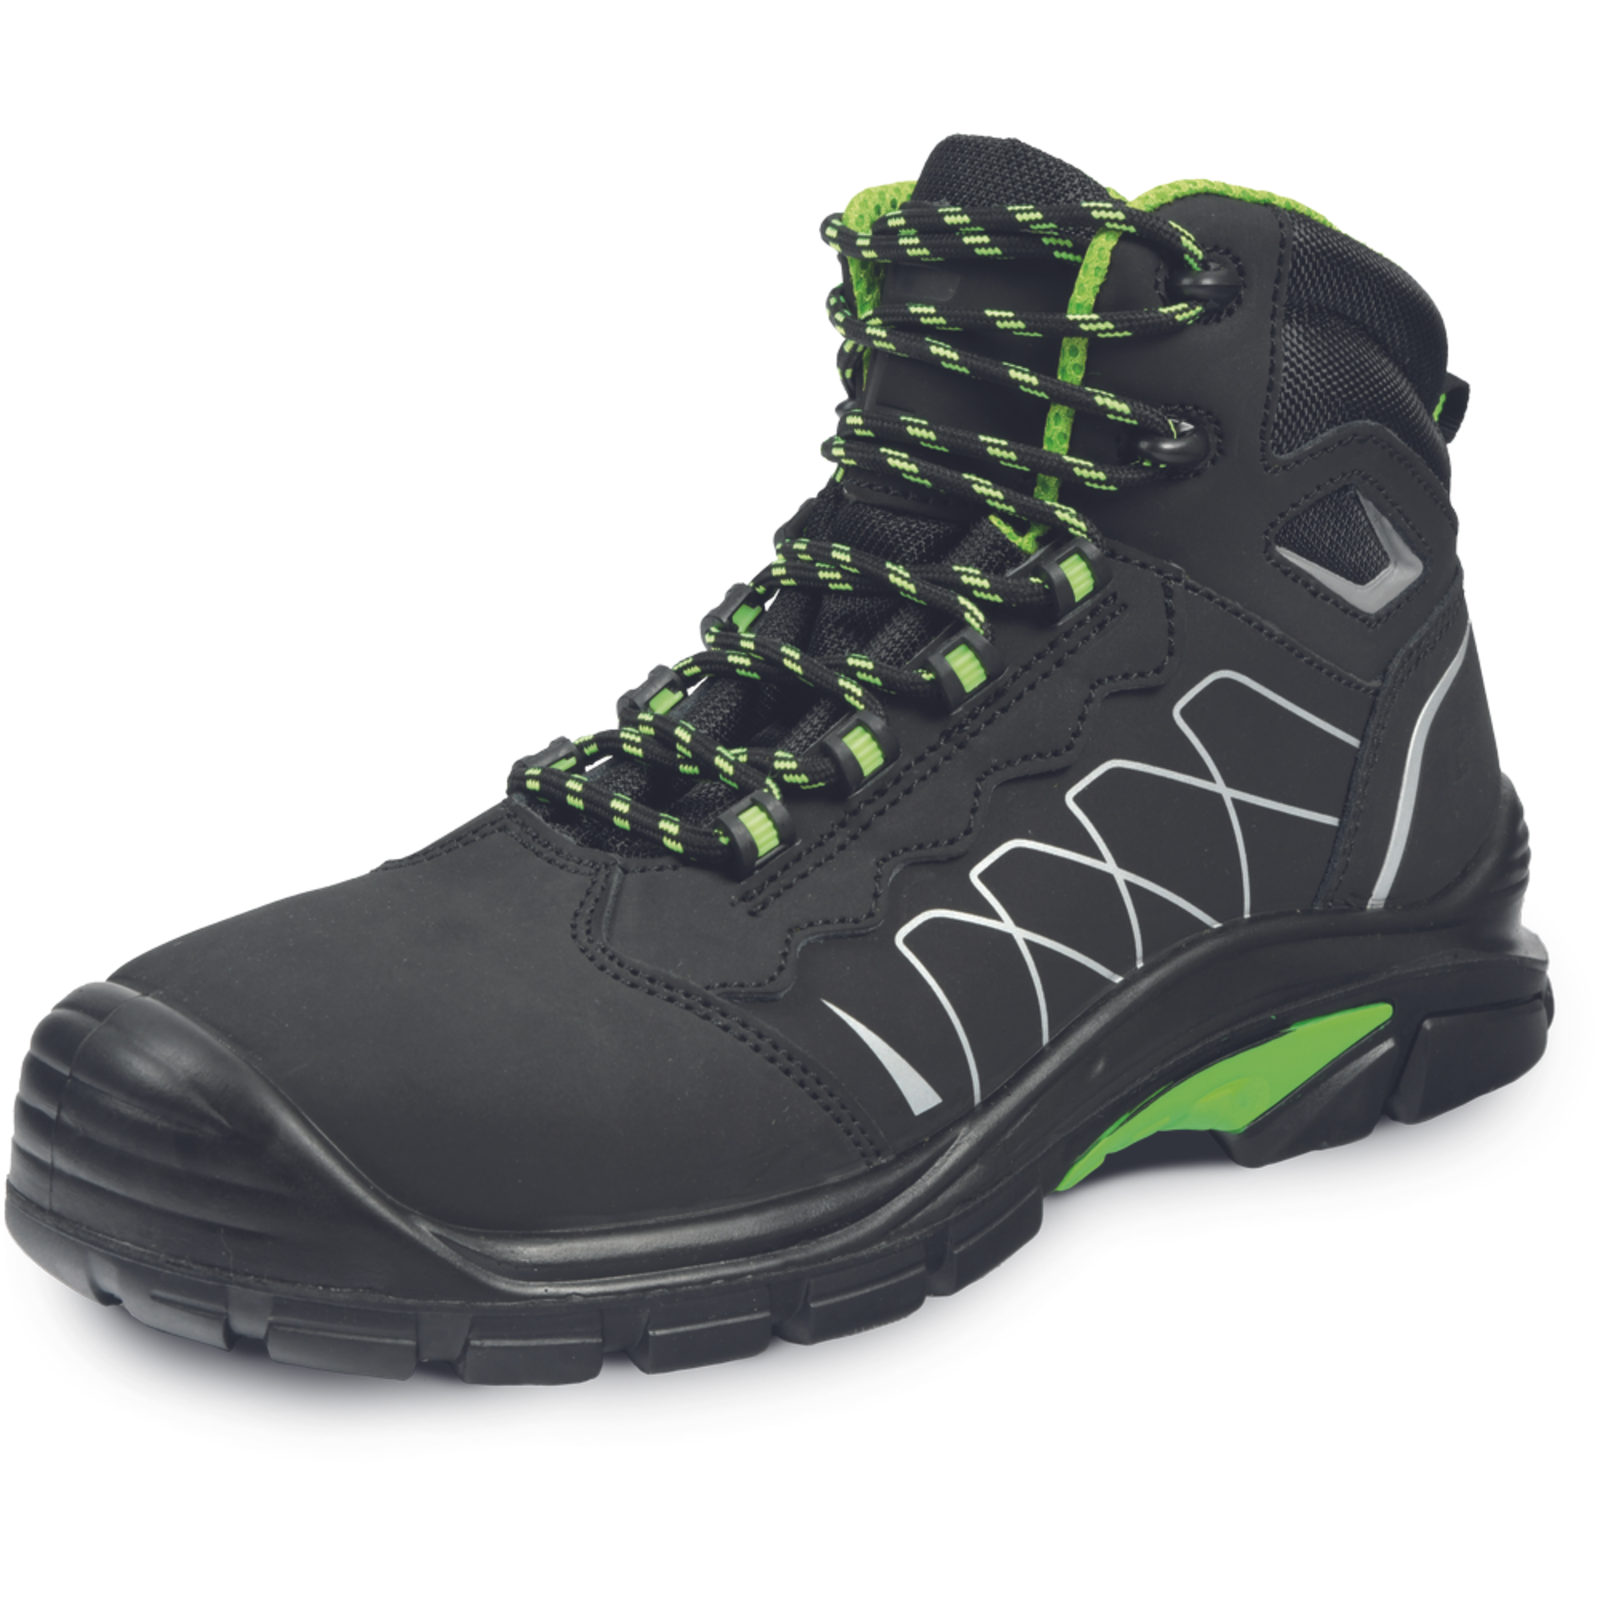 Bezpečnostná členková obuv Cerva Tornafort MF S3 SRC - veľkosť: 48, farba: čierna/zelená